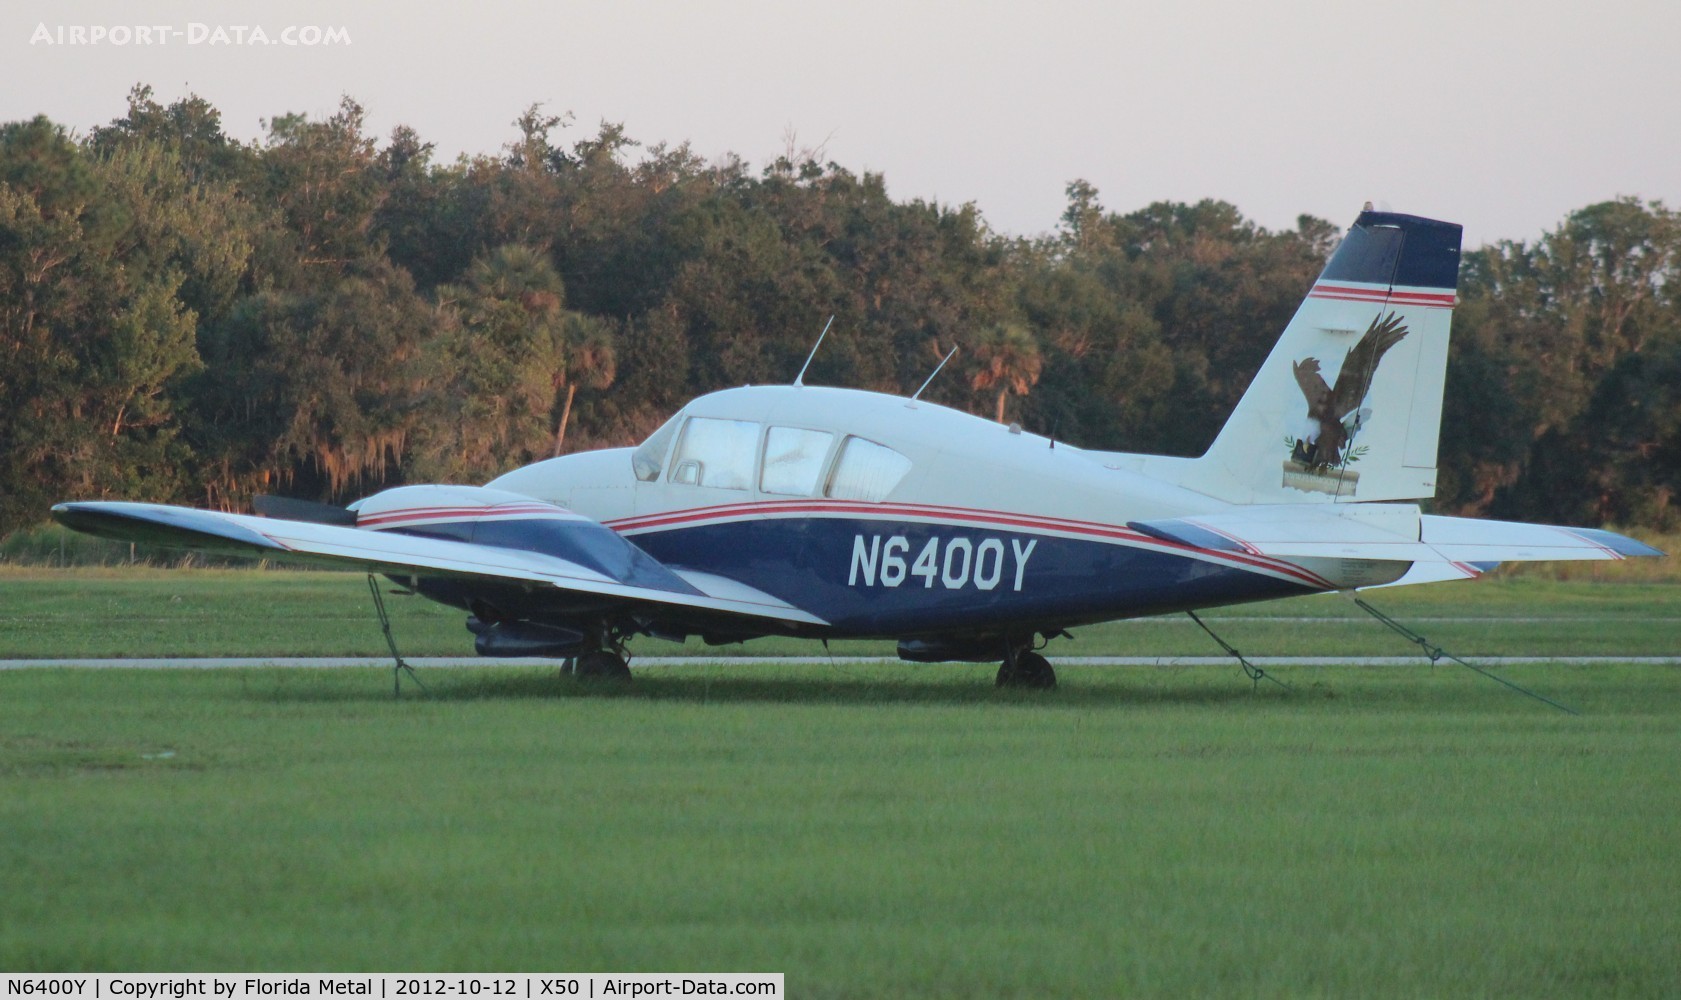 N6400Y, 1967 Piper PA-23-250 C/N 27-3685, PA-23-250